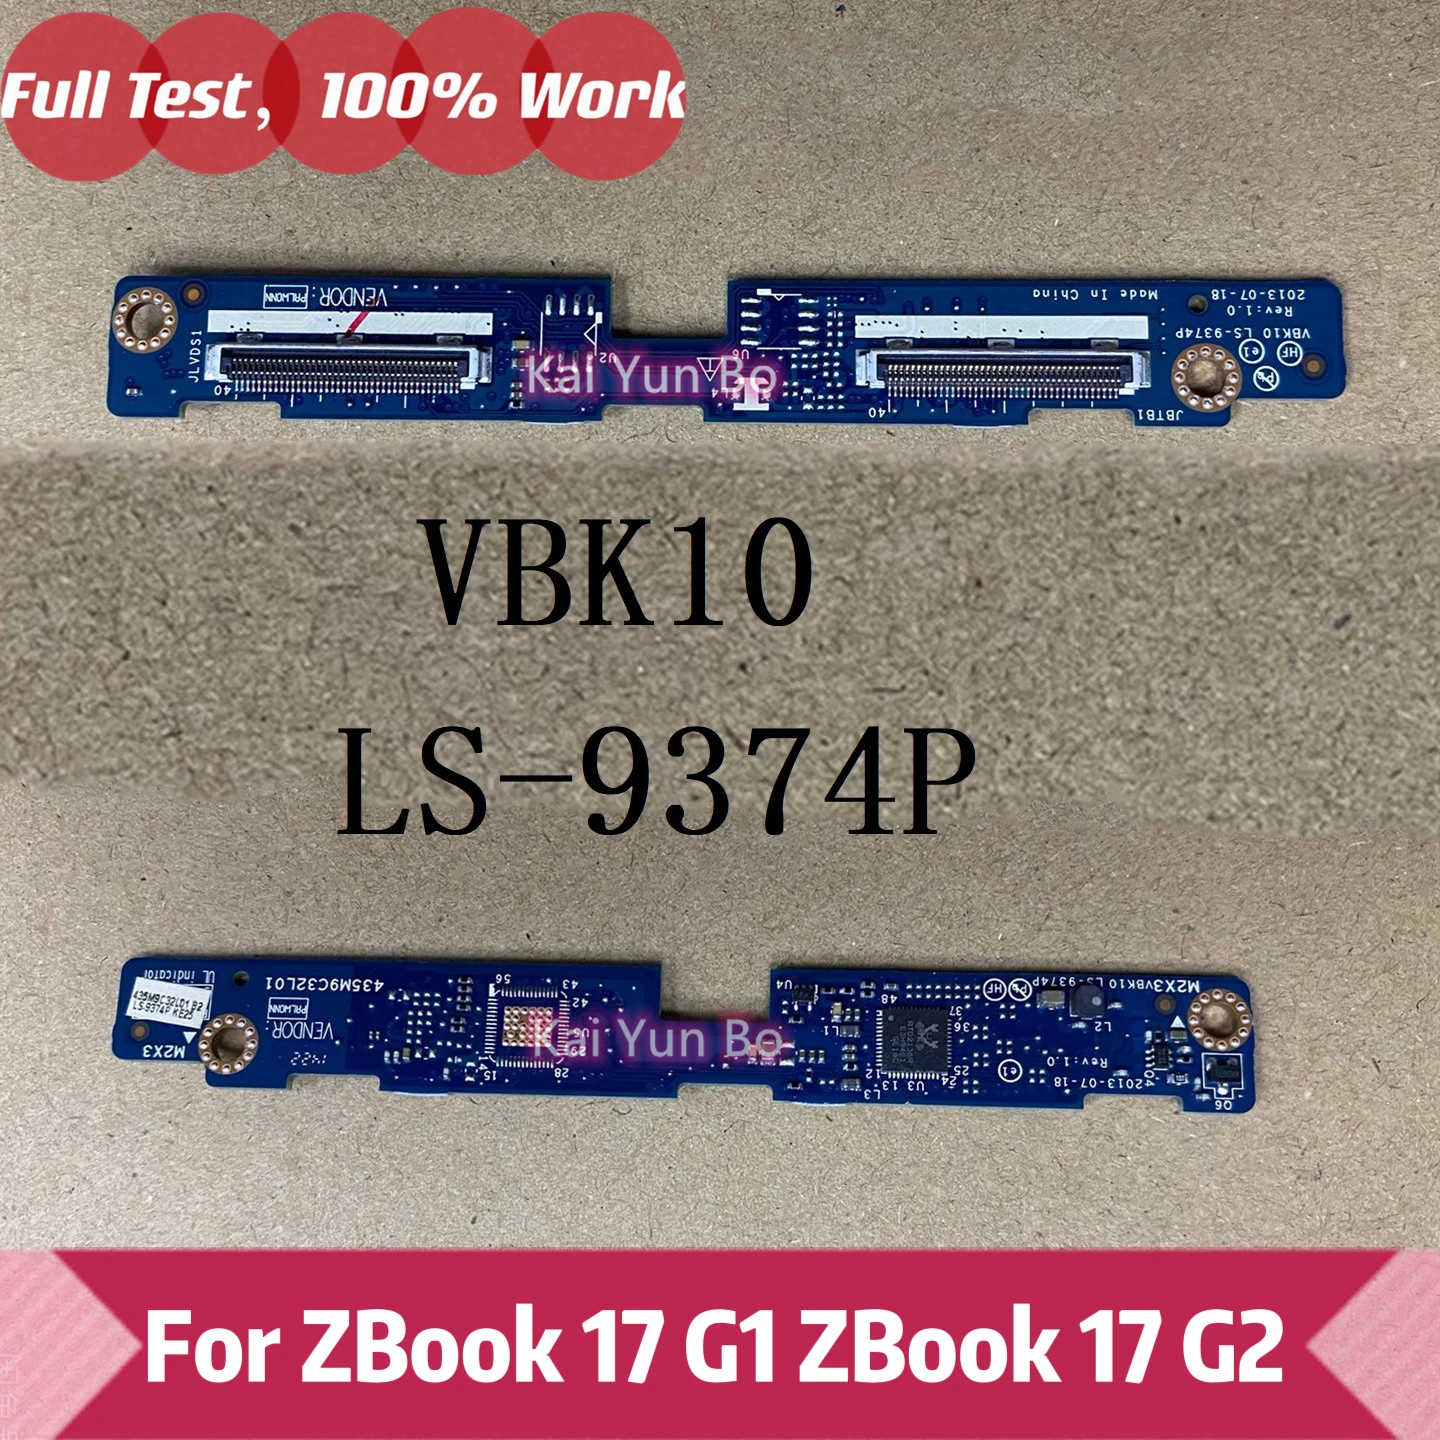 

Ноутбук VBK10 LS-9374P для ZbooK 17 G1 ZBOOK 17 G2 плата адаптера экрана дифференциального сигнала низкого напряжения